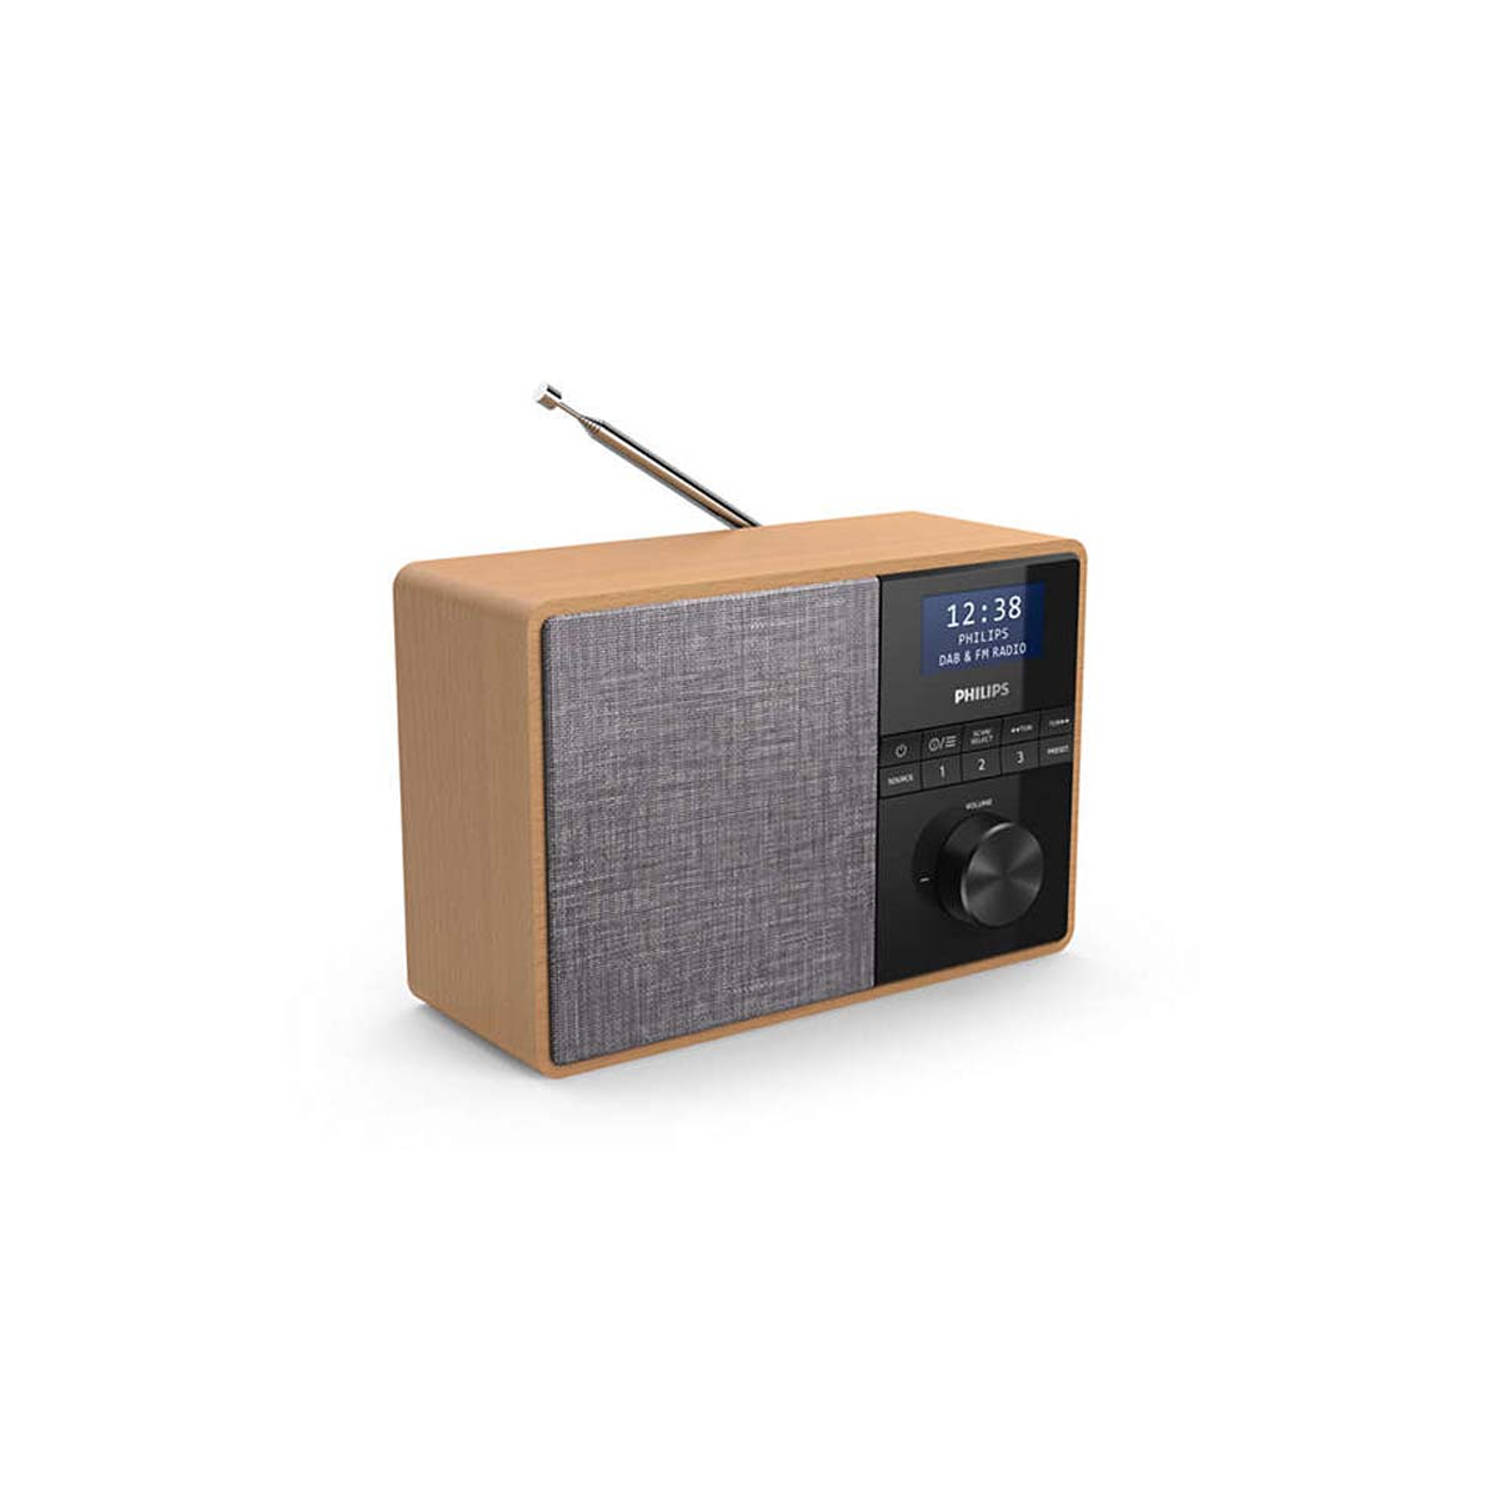 Afwijzen herberg Normaal Philips DAB radio TAR5505/10 | Blokker